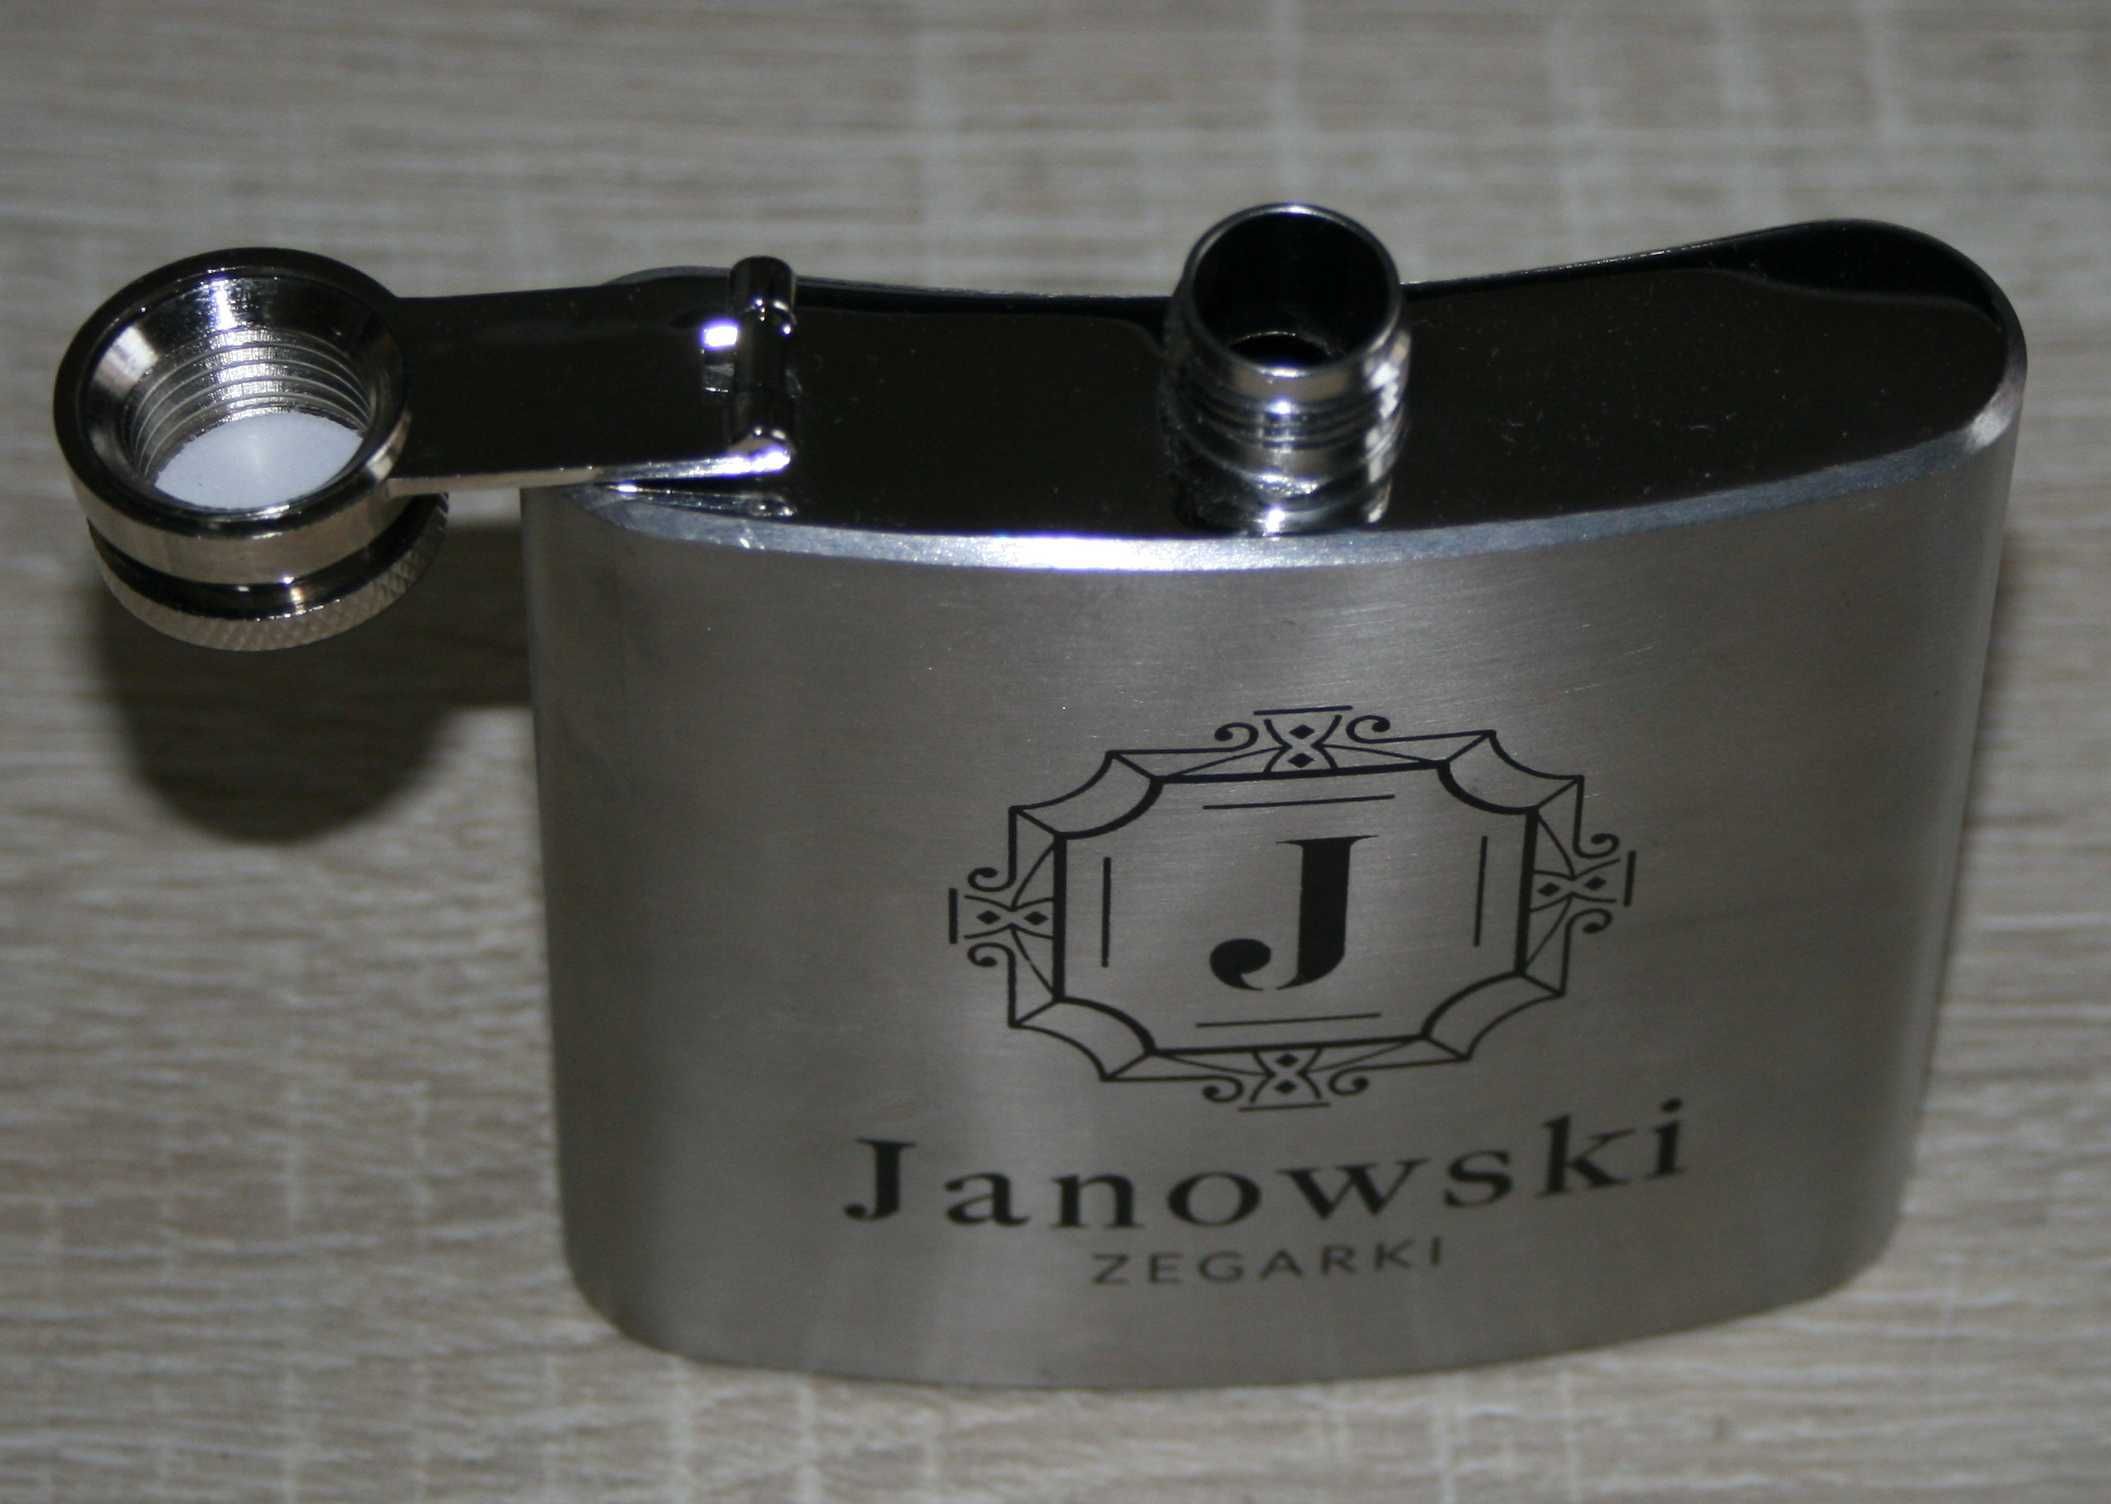 piersiówka z grawerem Janowski zegarki 200ml